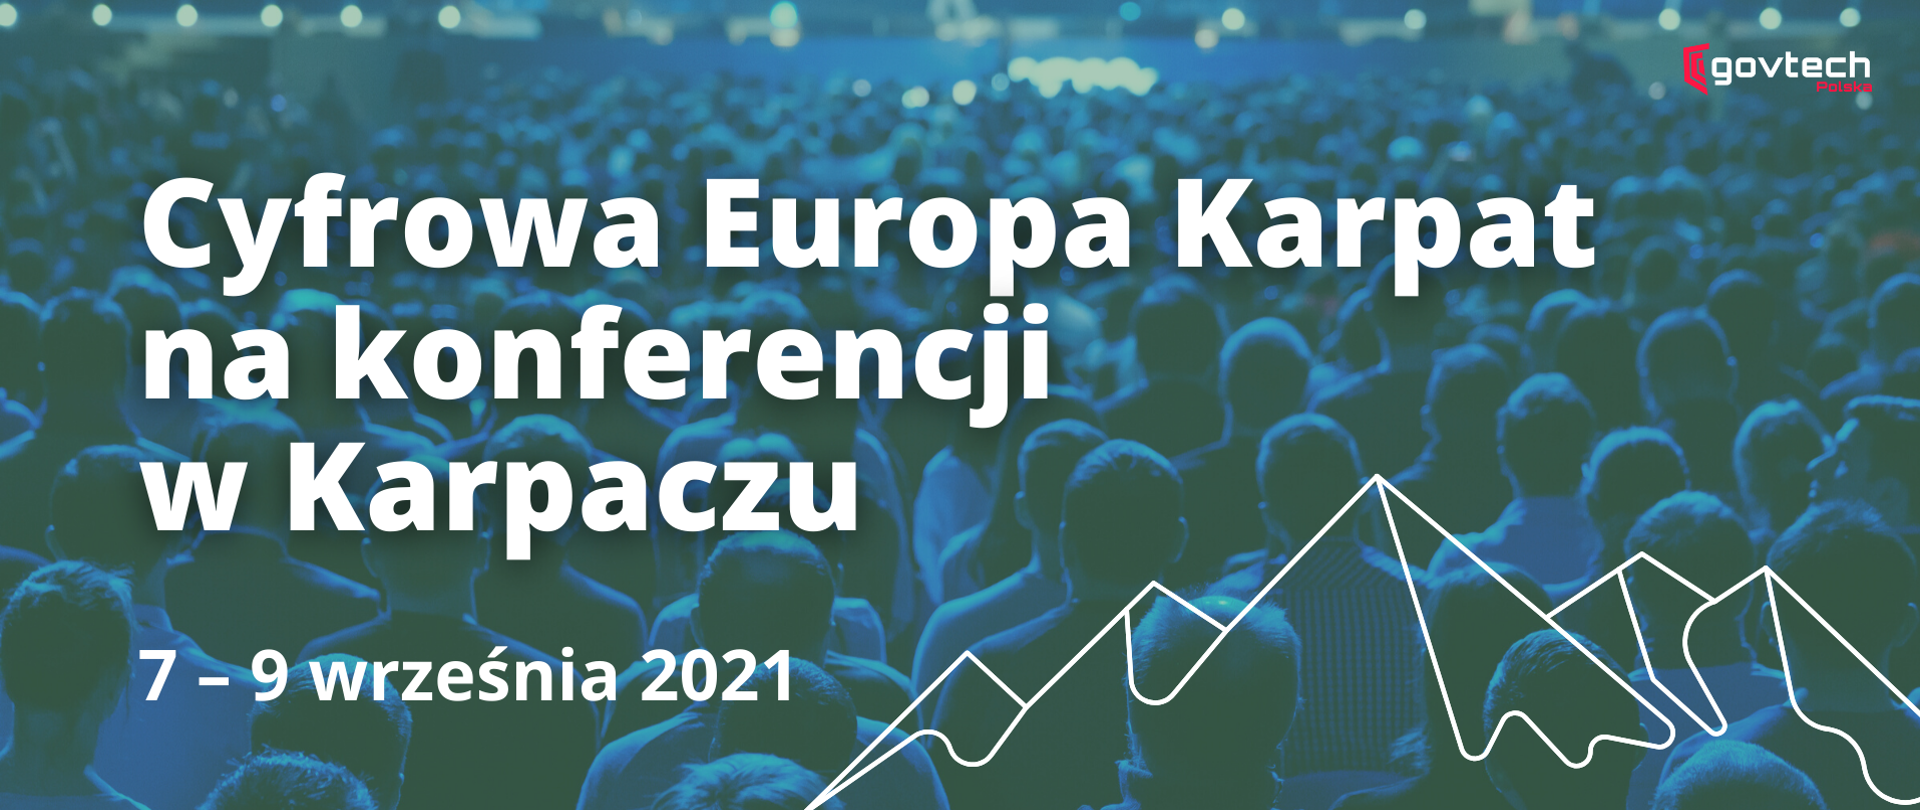 Cyfrowa Europa Karpat na konferencji w Karpaczu 7-9 września 2021